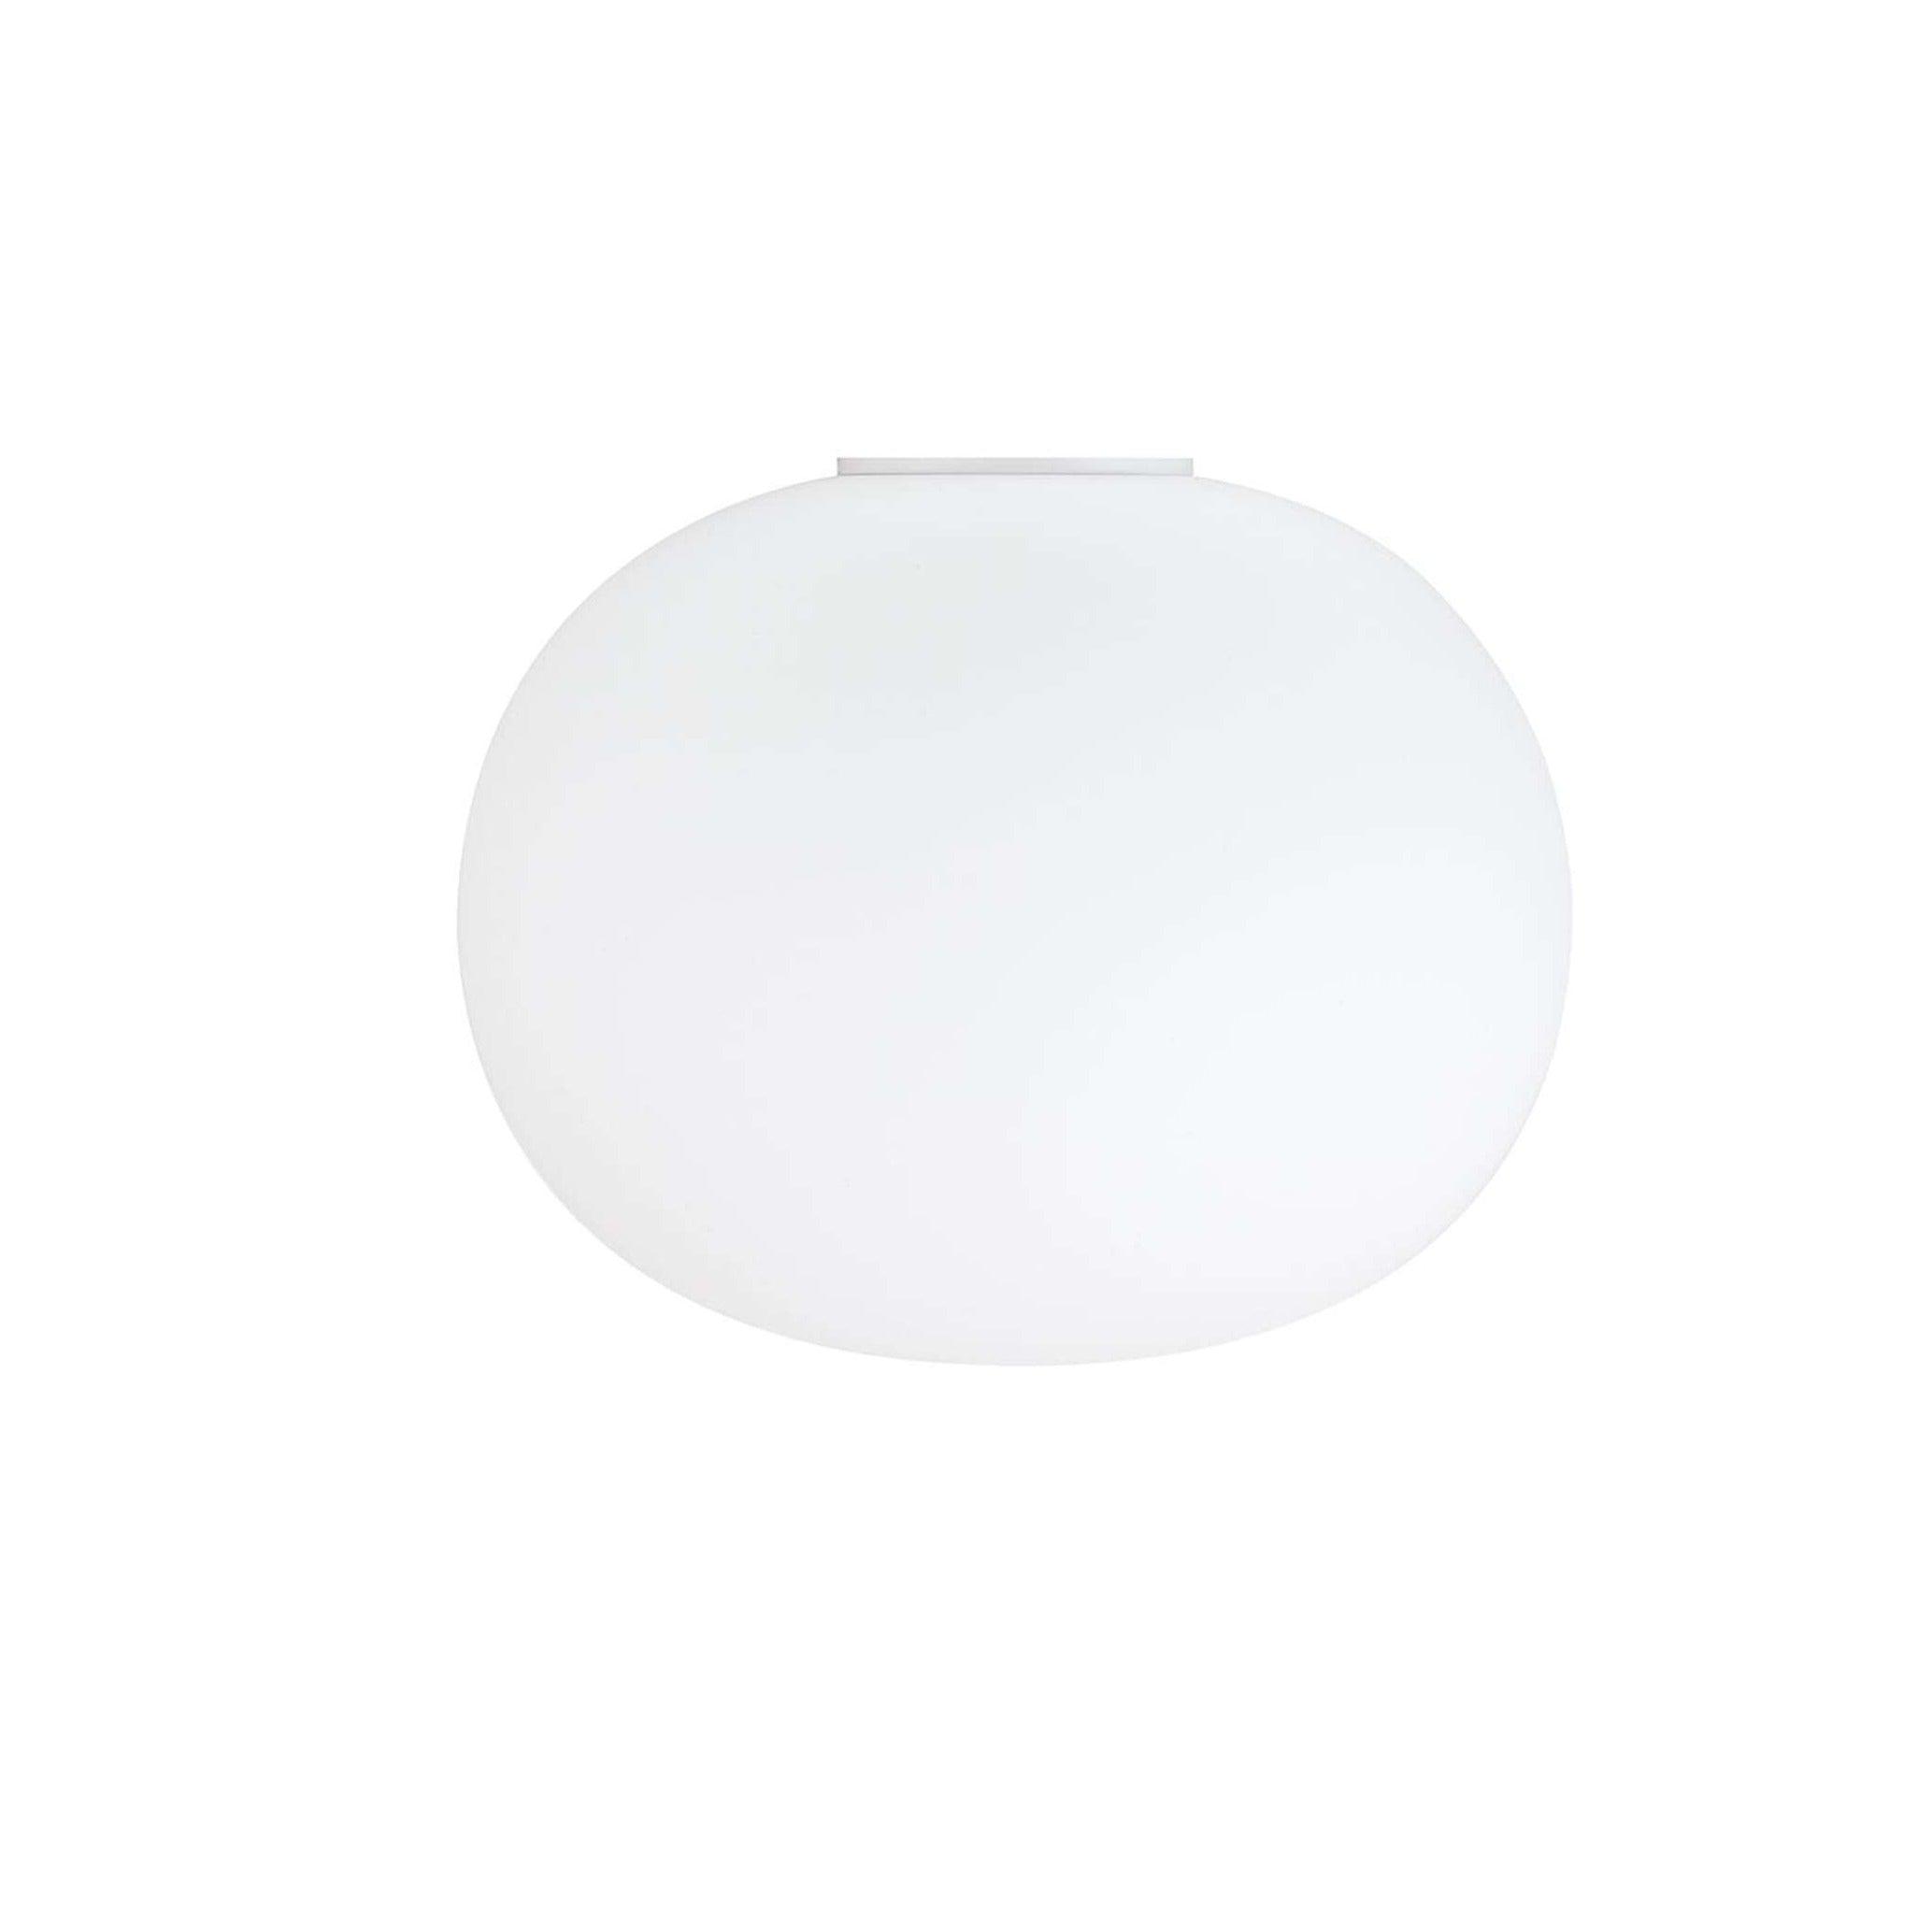 Lampa sufitowa GLO-BALL biały Flos L bez żarówki  Eye on Design